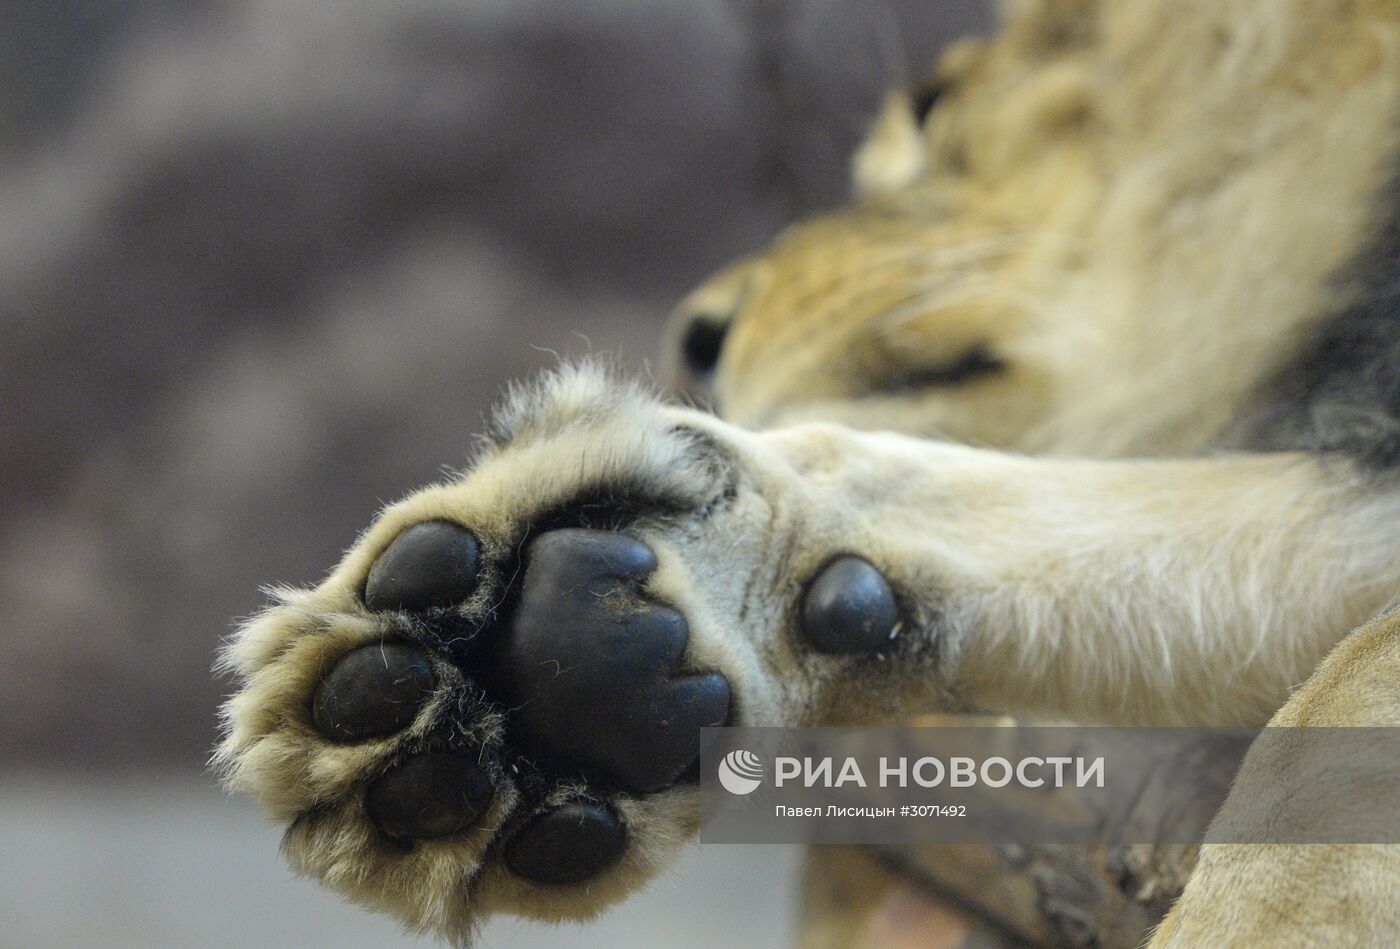 Пополнение у африканских львов в Екатеринбургском зоопарке